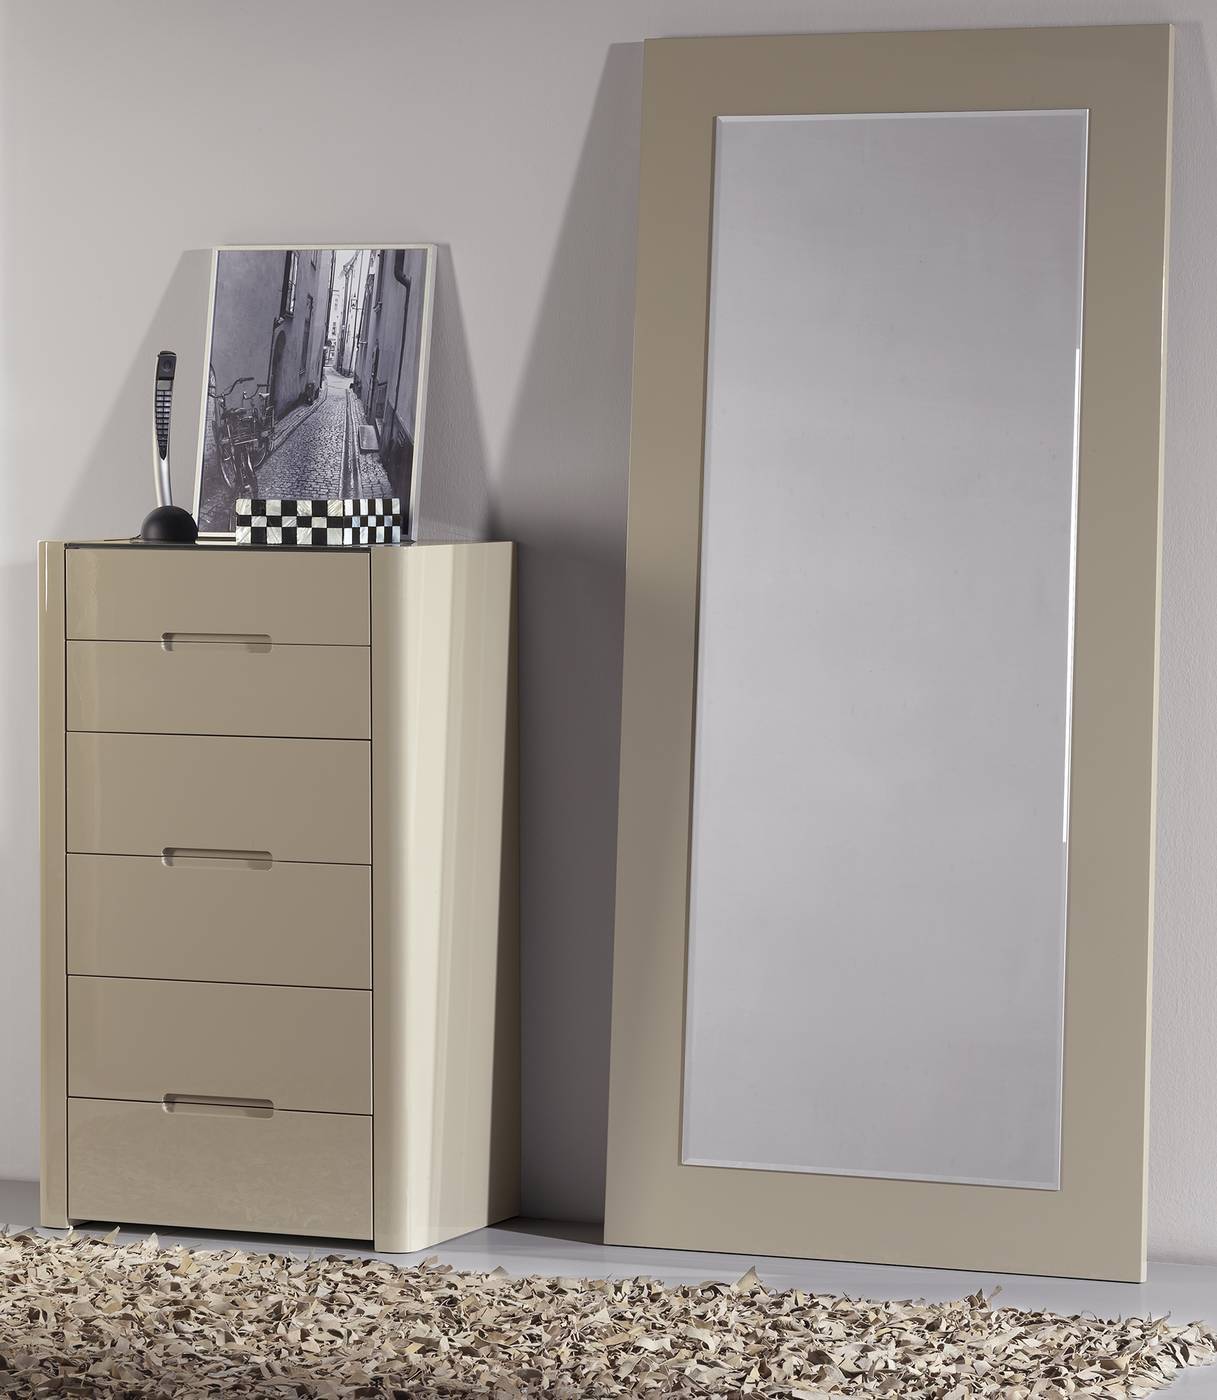 Espejo color piedra LD E-77 - Espejo alto rectangular, con marco lacado en color piedra brillo